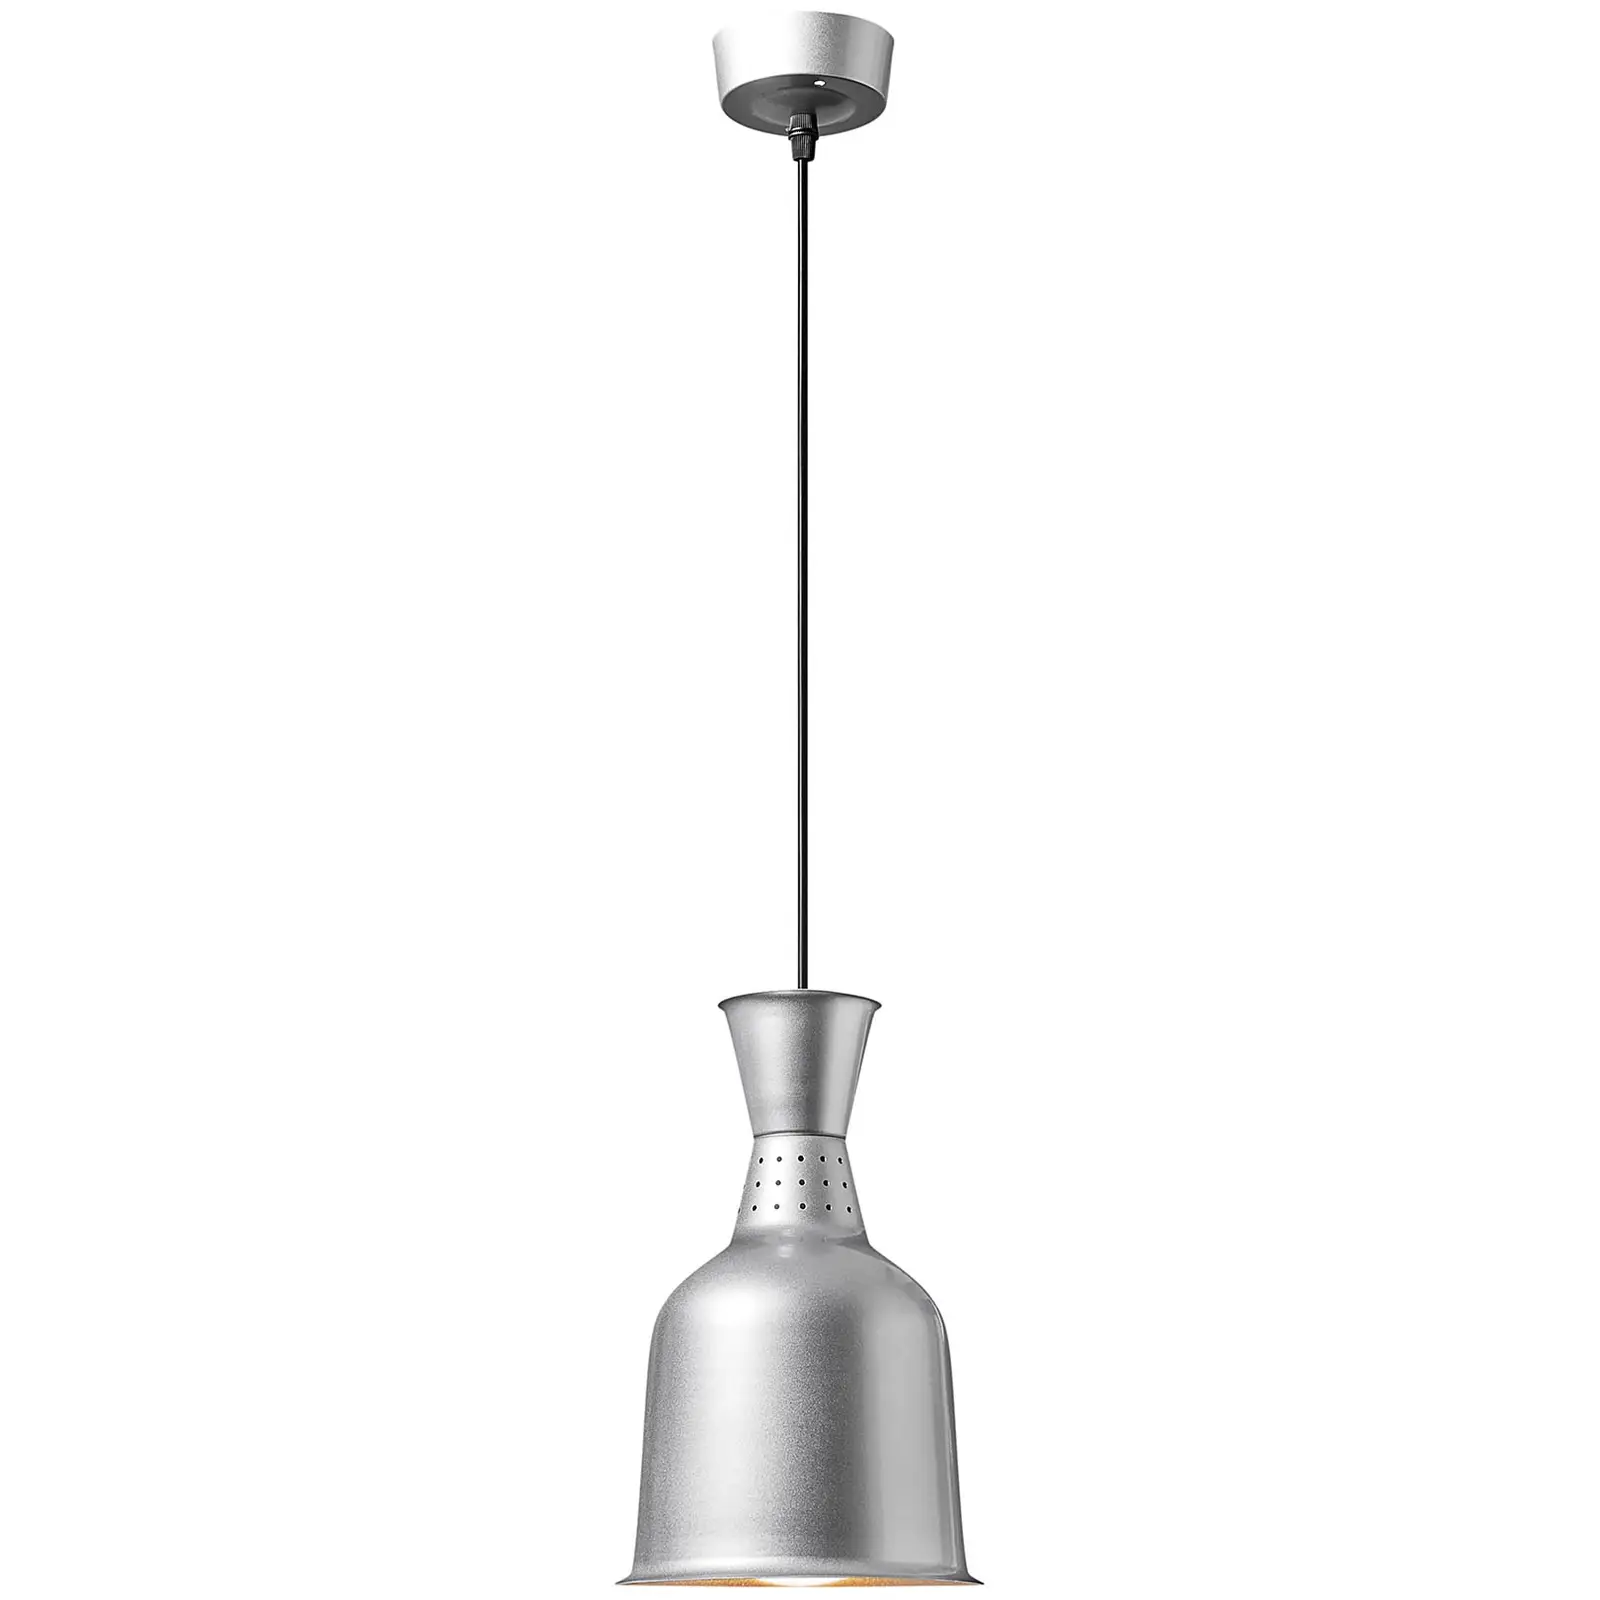 Lámpara calentadora de alimentos - plateada - 18.5 x 18.5 x 28.5 cm - Royal Catering - acero